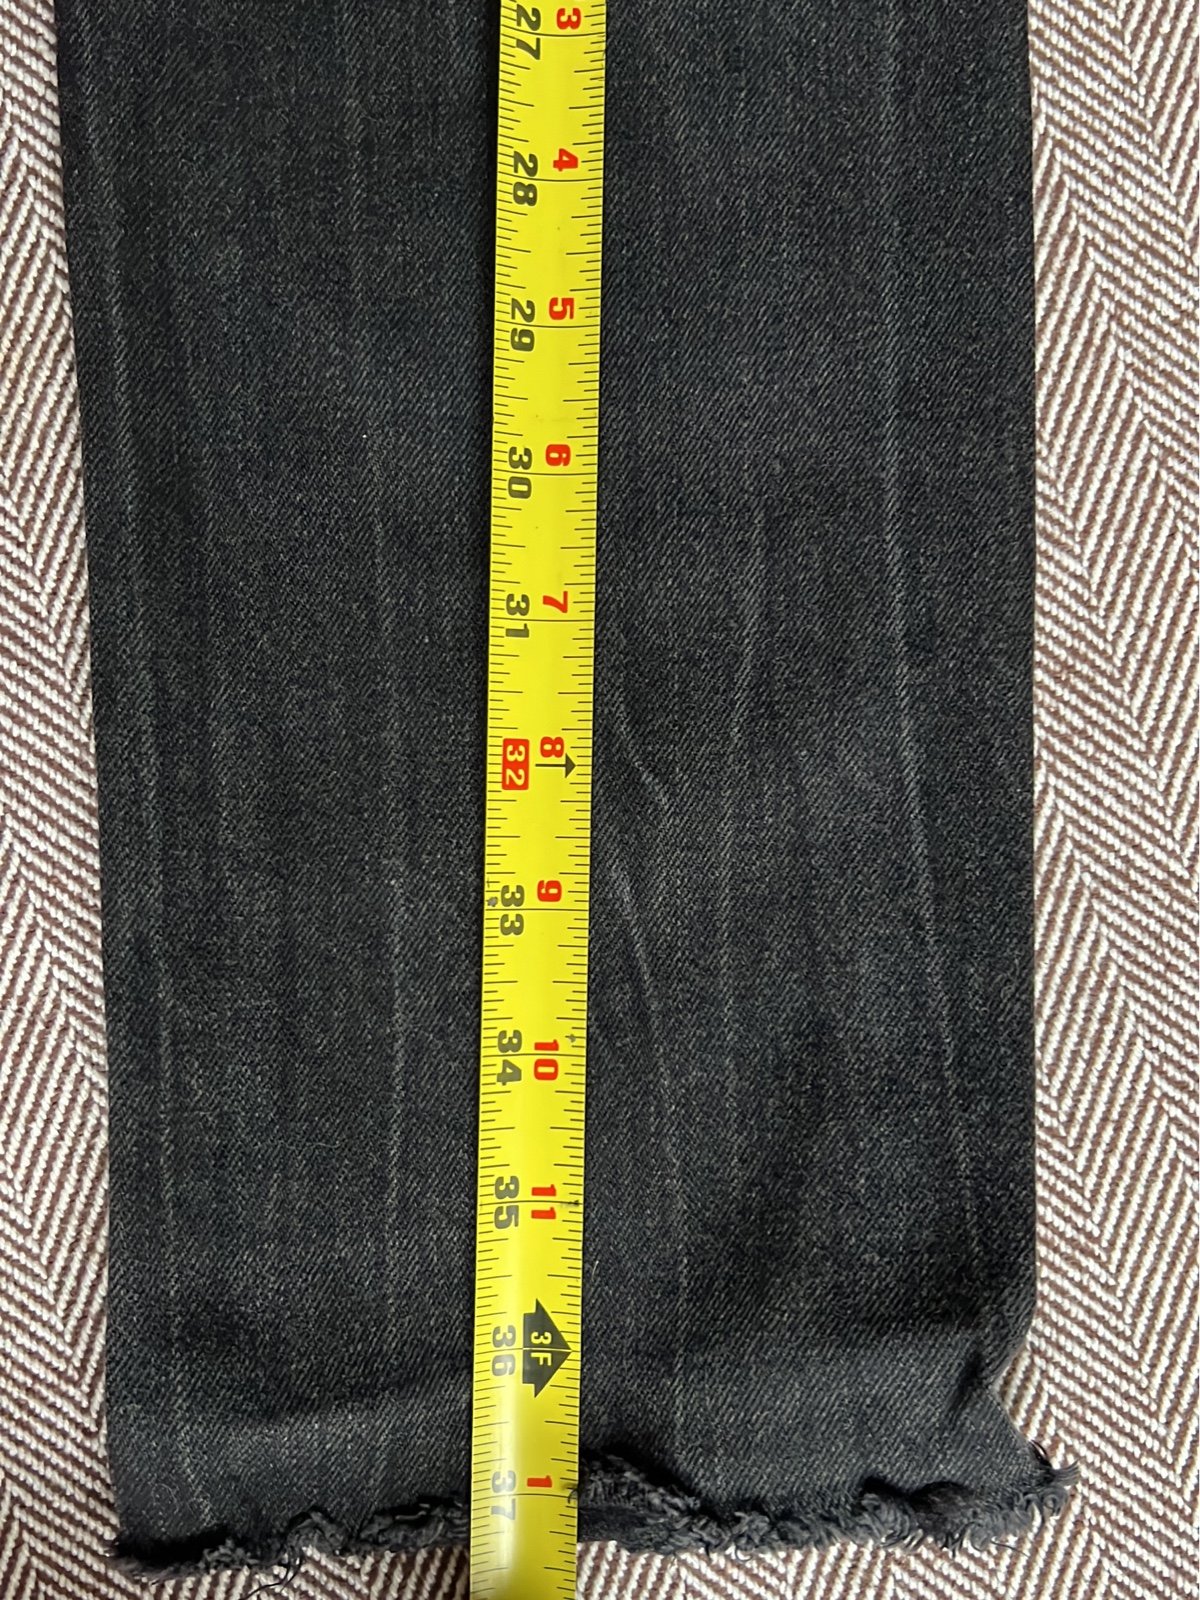 floor price Helmut lang Jeans size 27 IgT8zuWbN US Sale